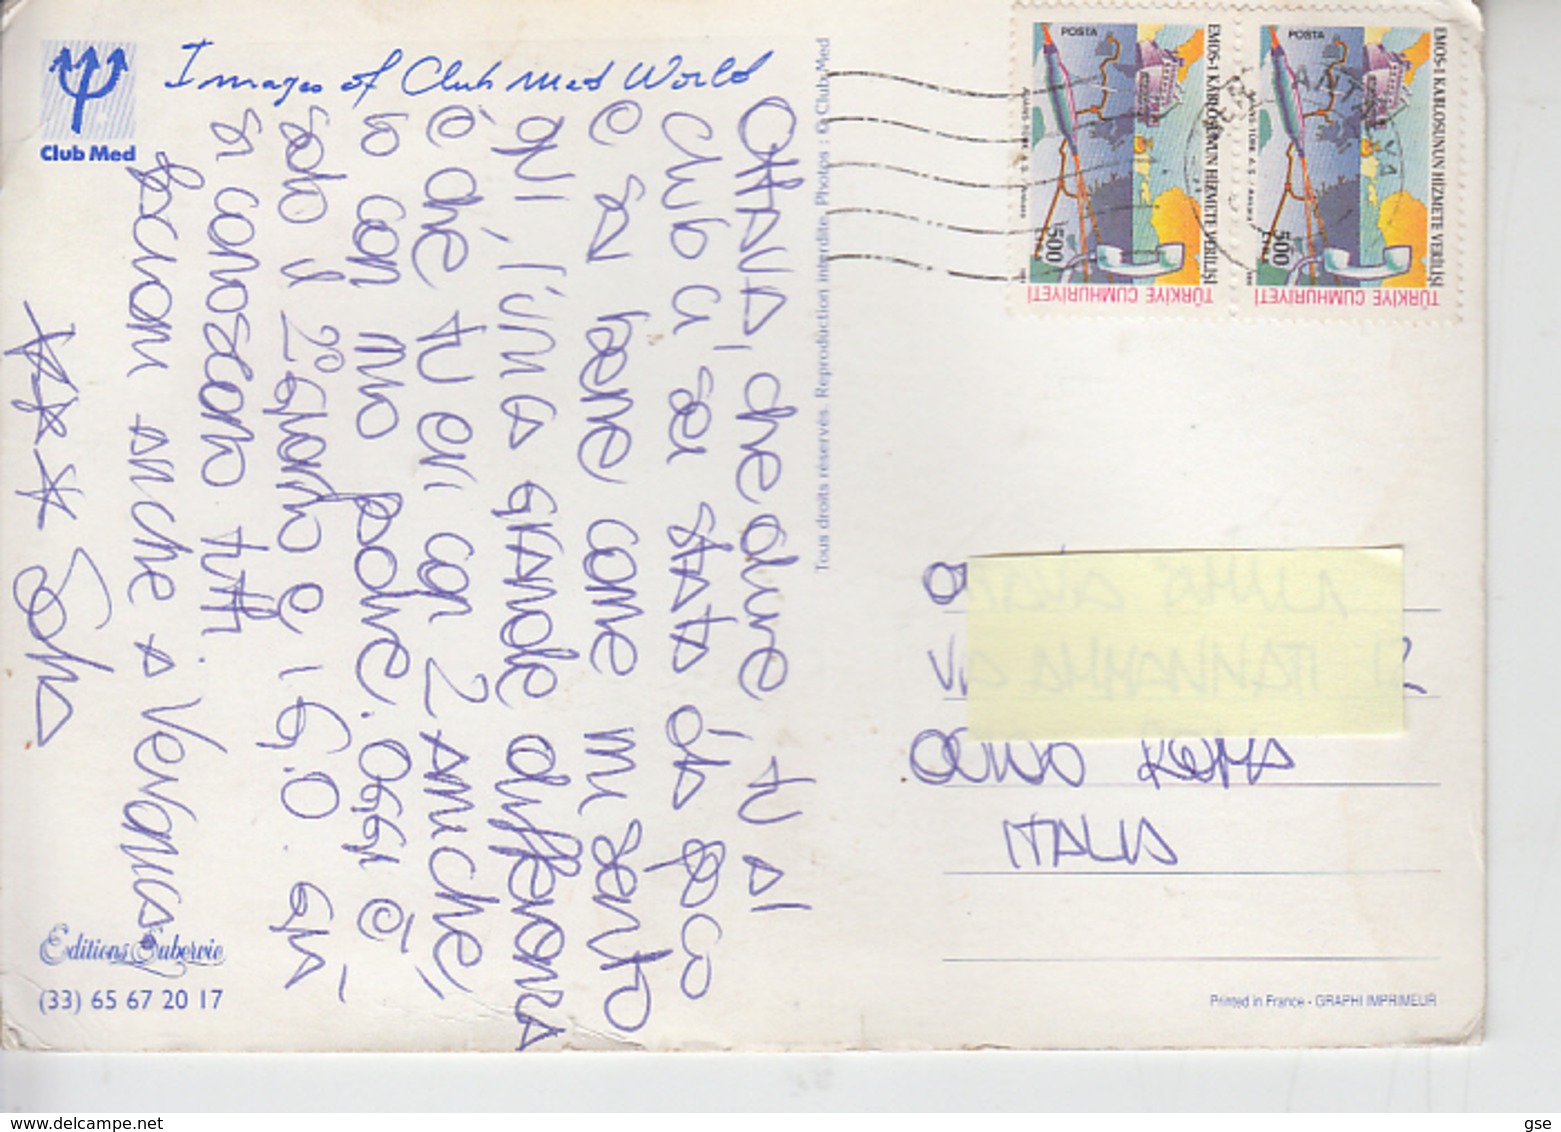 TURCHIA  1991 - Unificato  2680 - Scienza E Tecnica - Briefe U. Dokumente